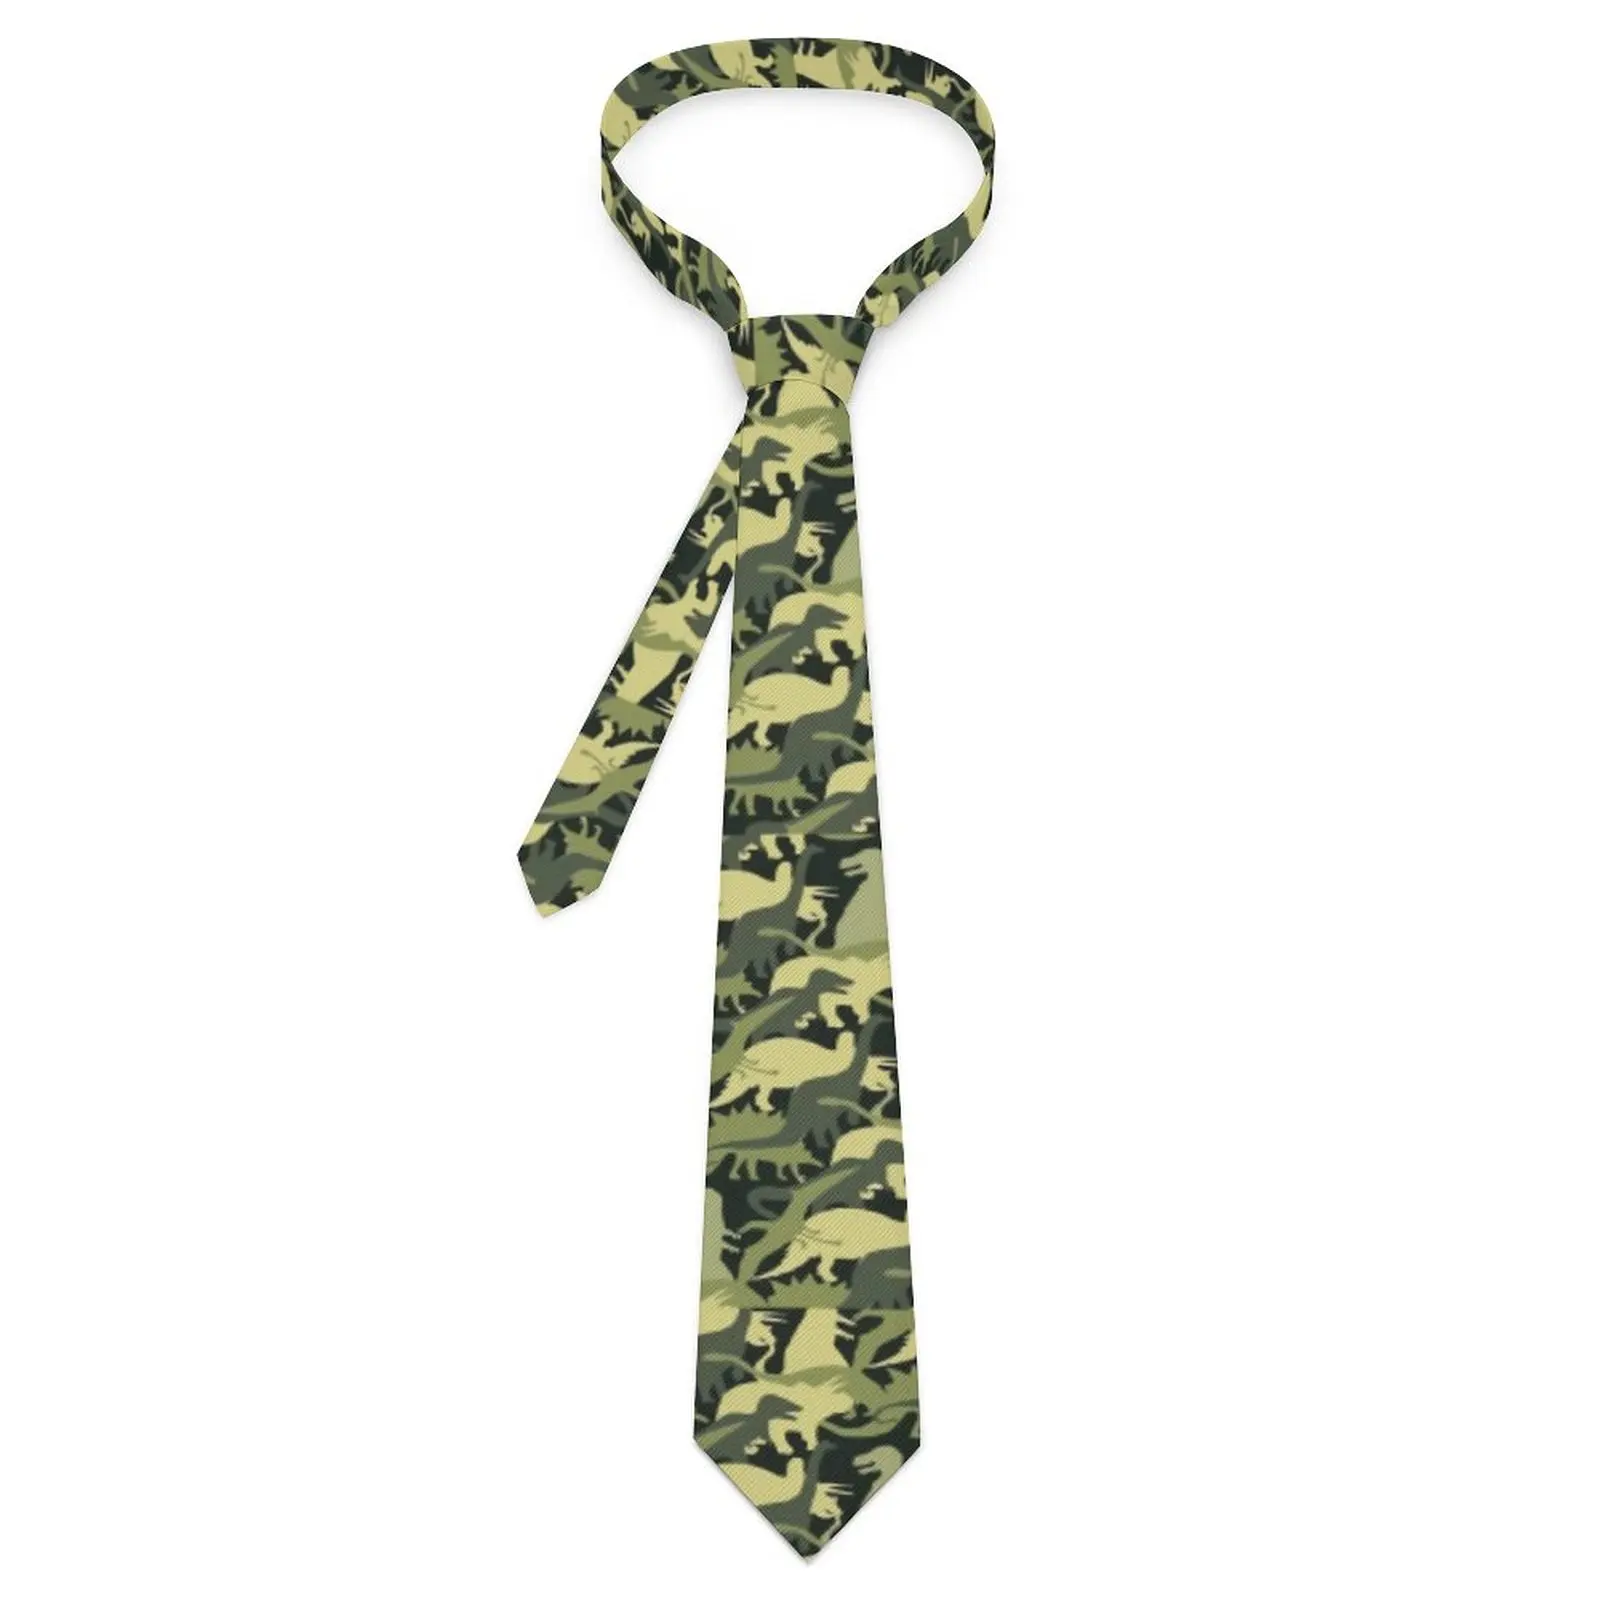 

Галстук в виде динозавра, камуфляж, абстрактная животная, повседневная одежда, галстуки для шеи, классический элегантный галстук для мужчин, галстук для шеи с графическим рисунком, Подарочный галстук